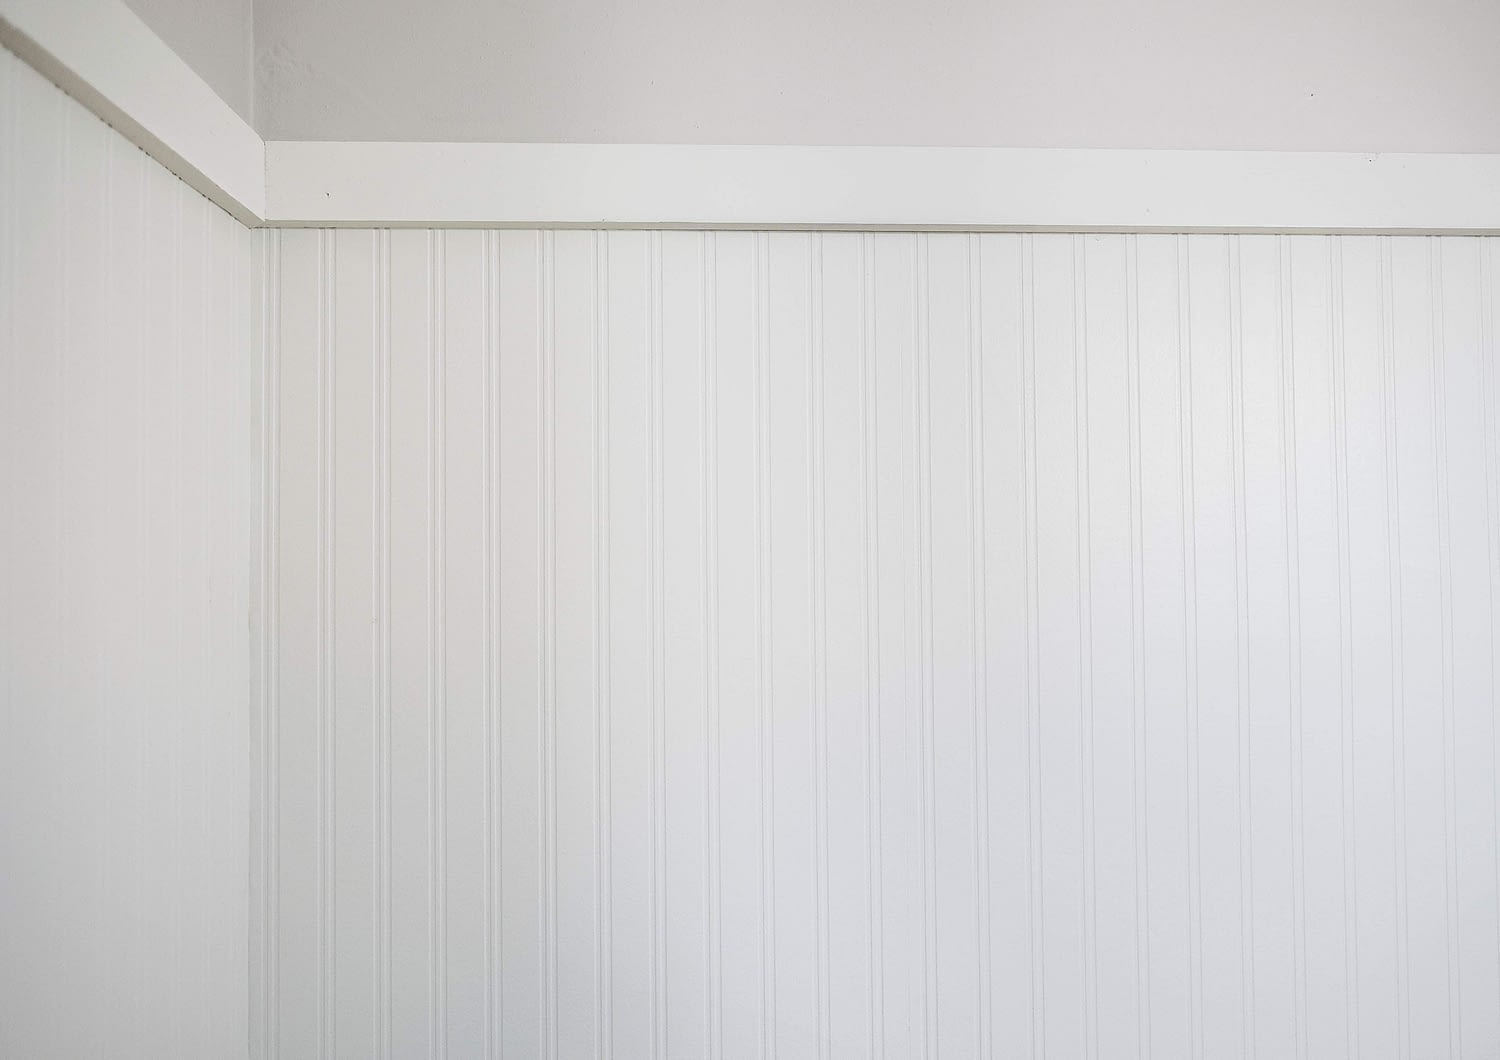 White beadboard wallpaper against light grey wall